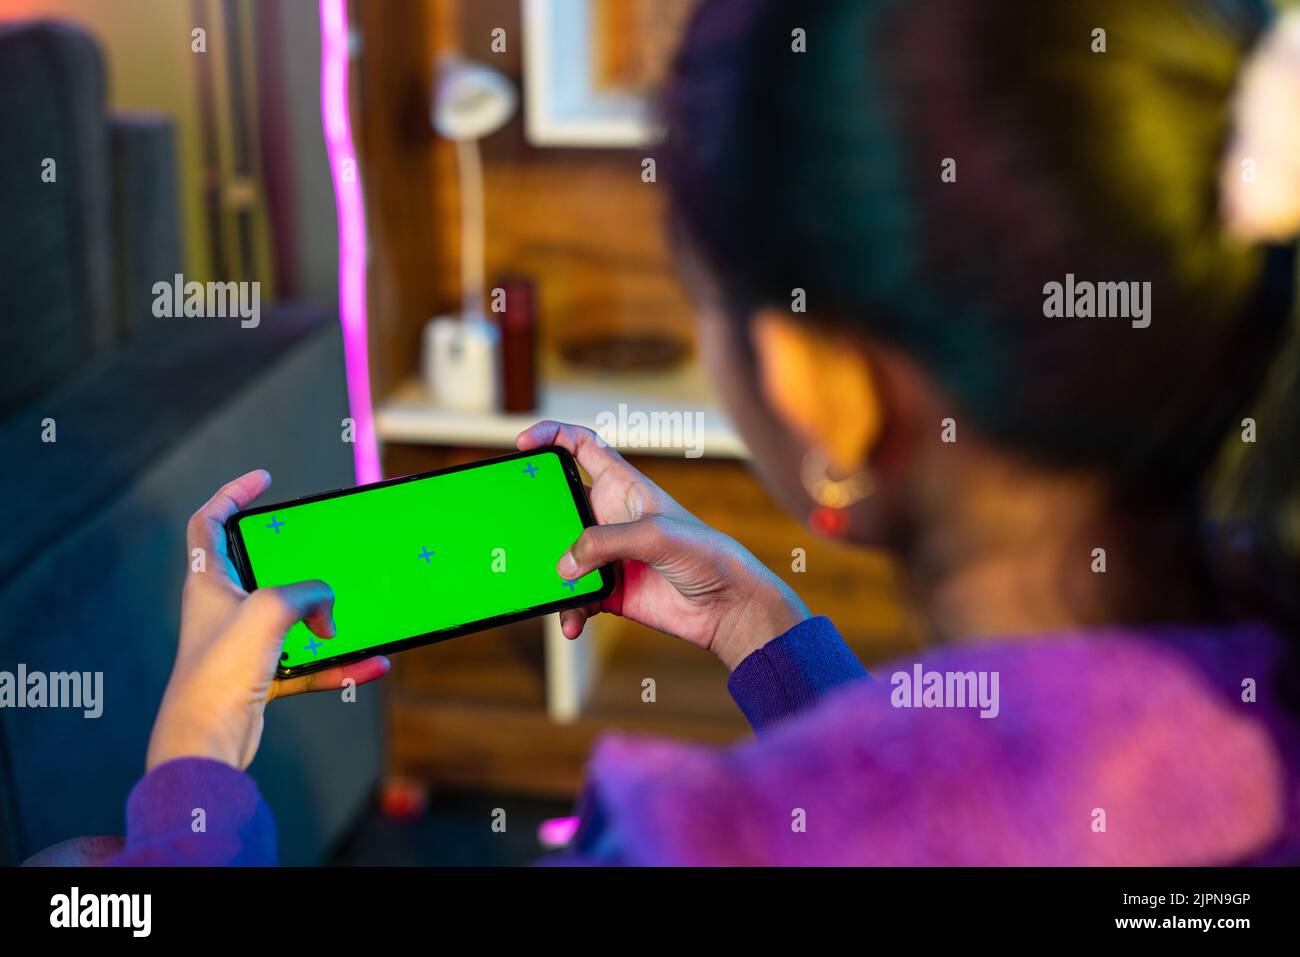 Schulteraufnahme eines Teenagers, das zu Hause Videospiel auf dem grünen Bildschirm eines Mobiltelefons spielt - Konzept von Unterhaltungsangeboten, Spielsucht und Technologie Stockfoto